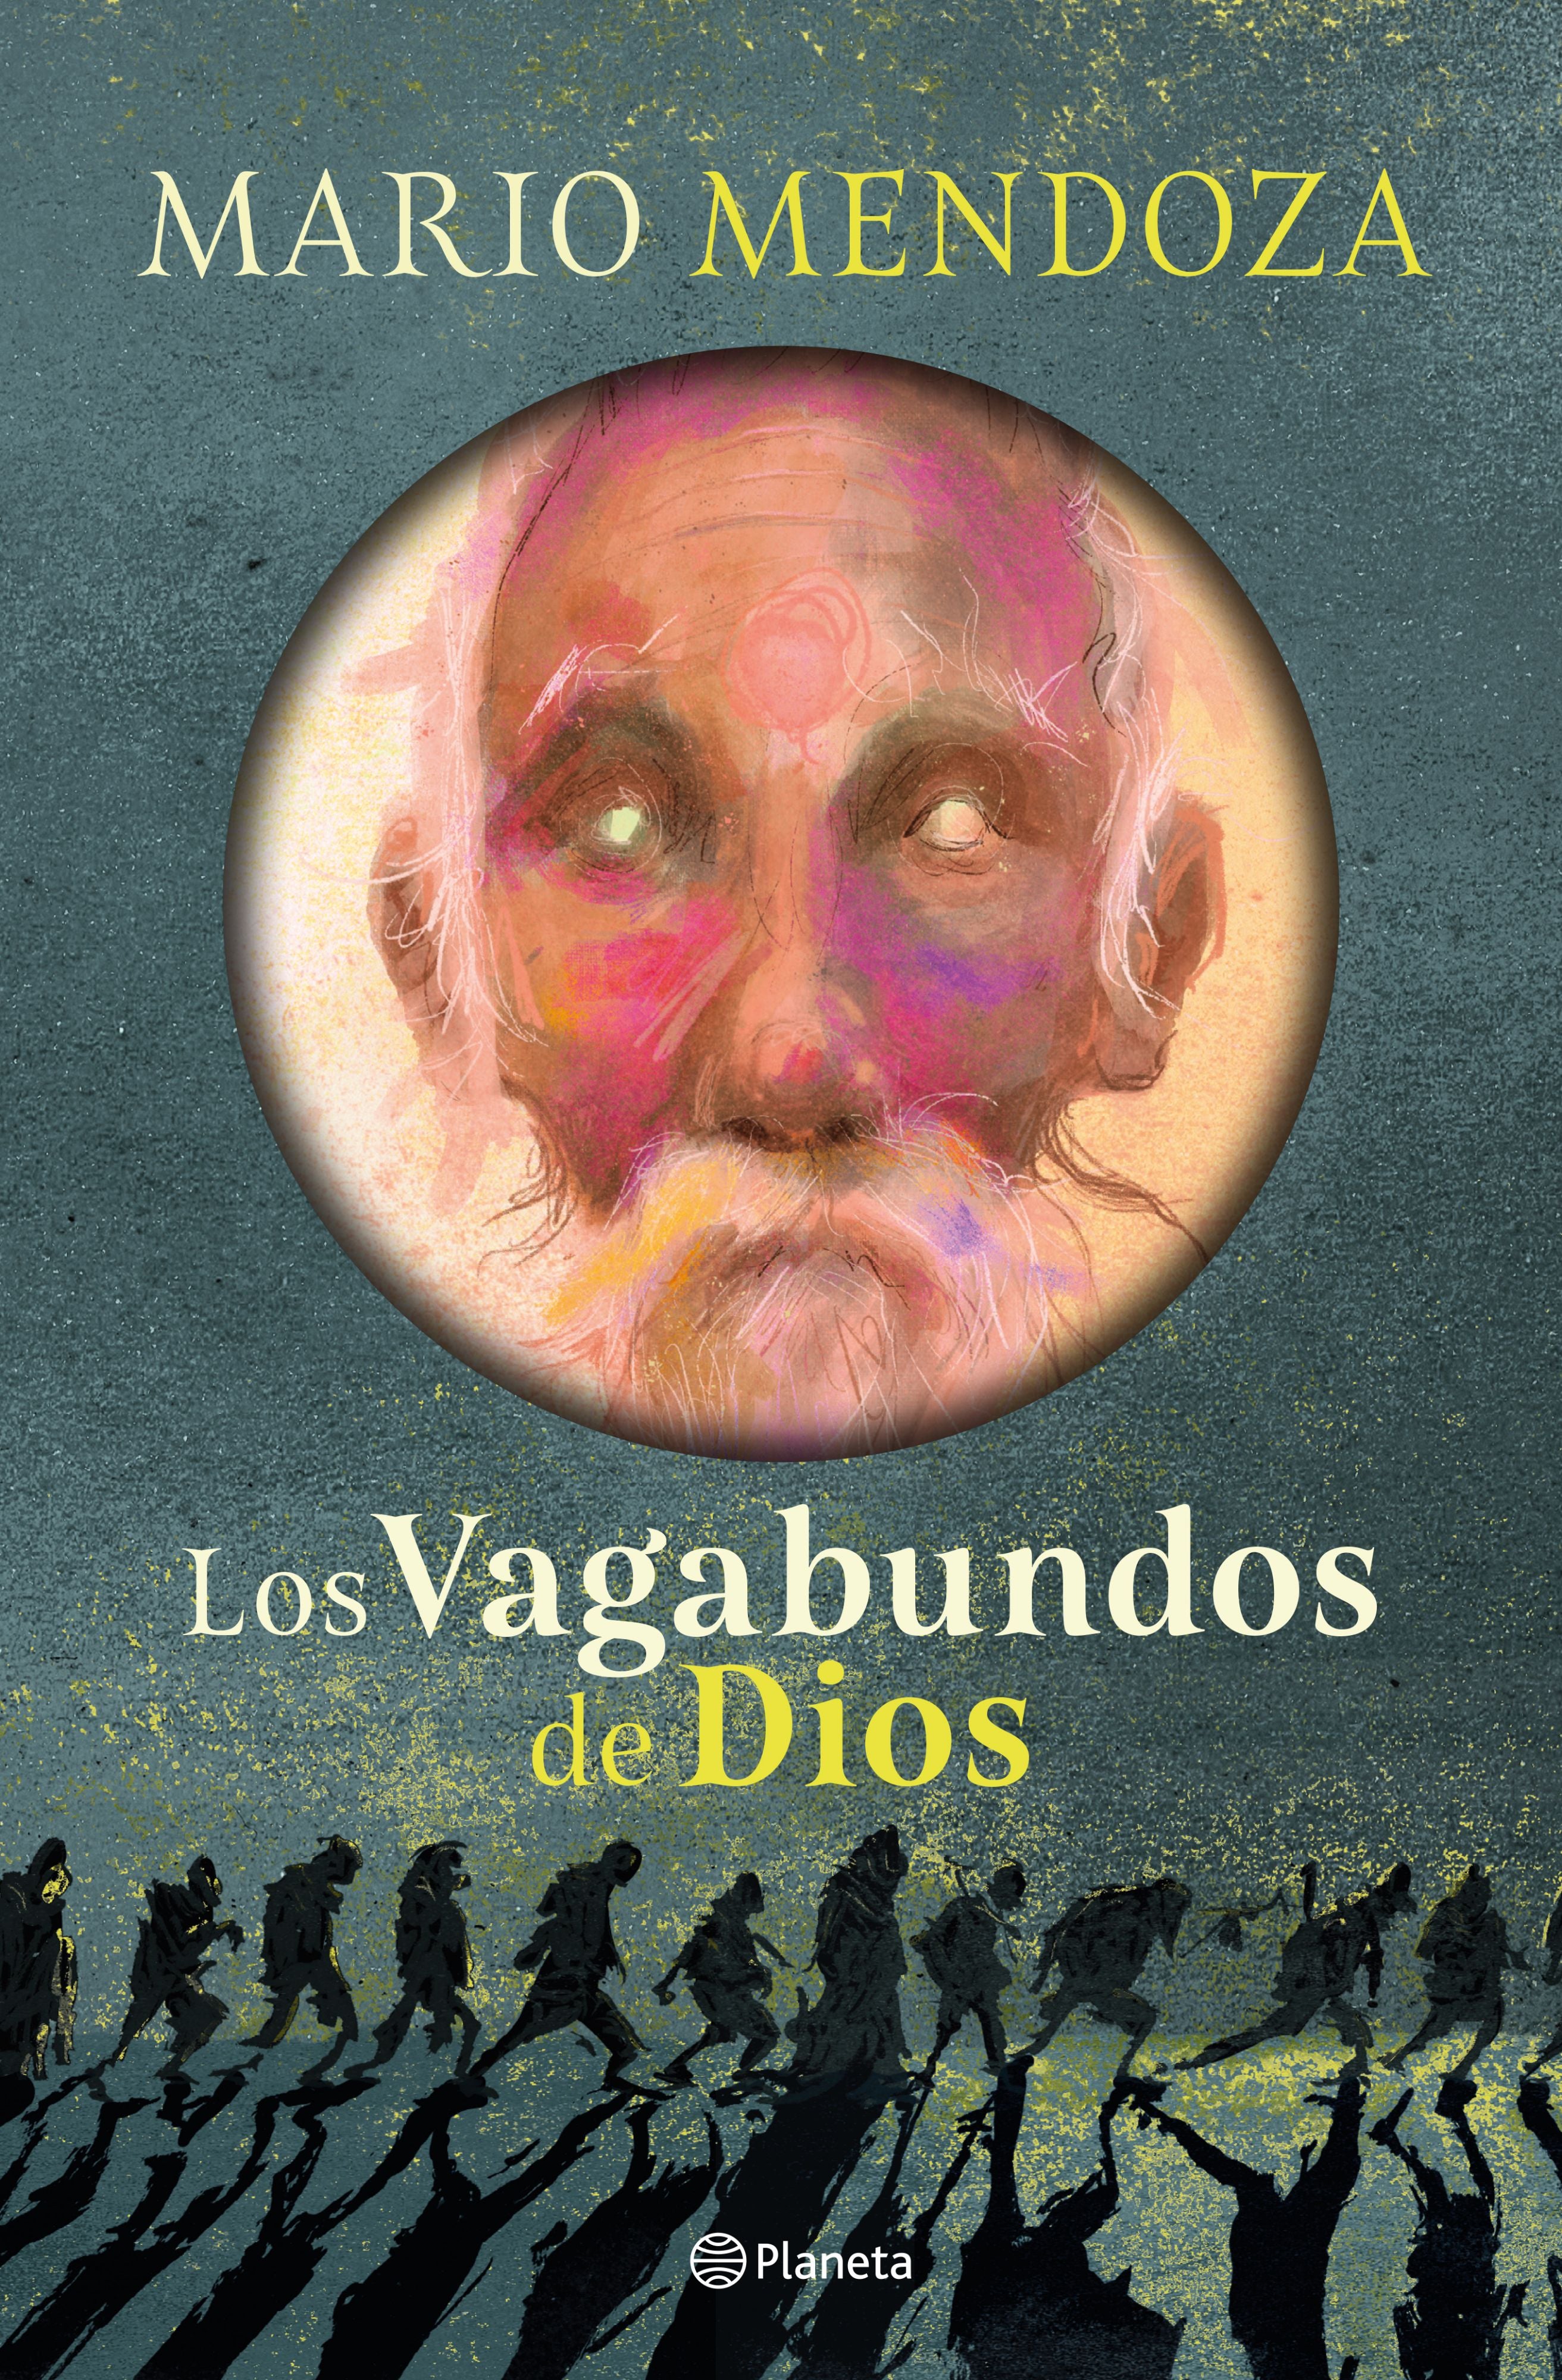 Libro Mario Mendoza - Los vagabundos de Dios